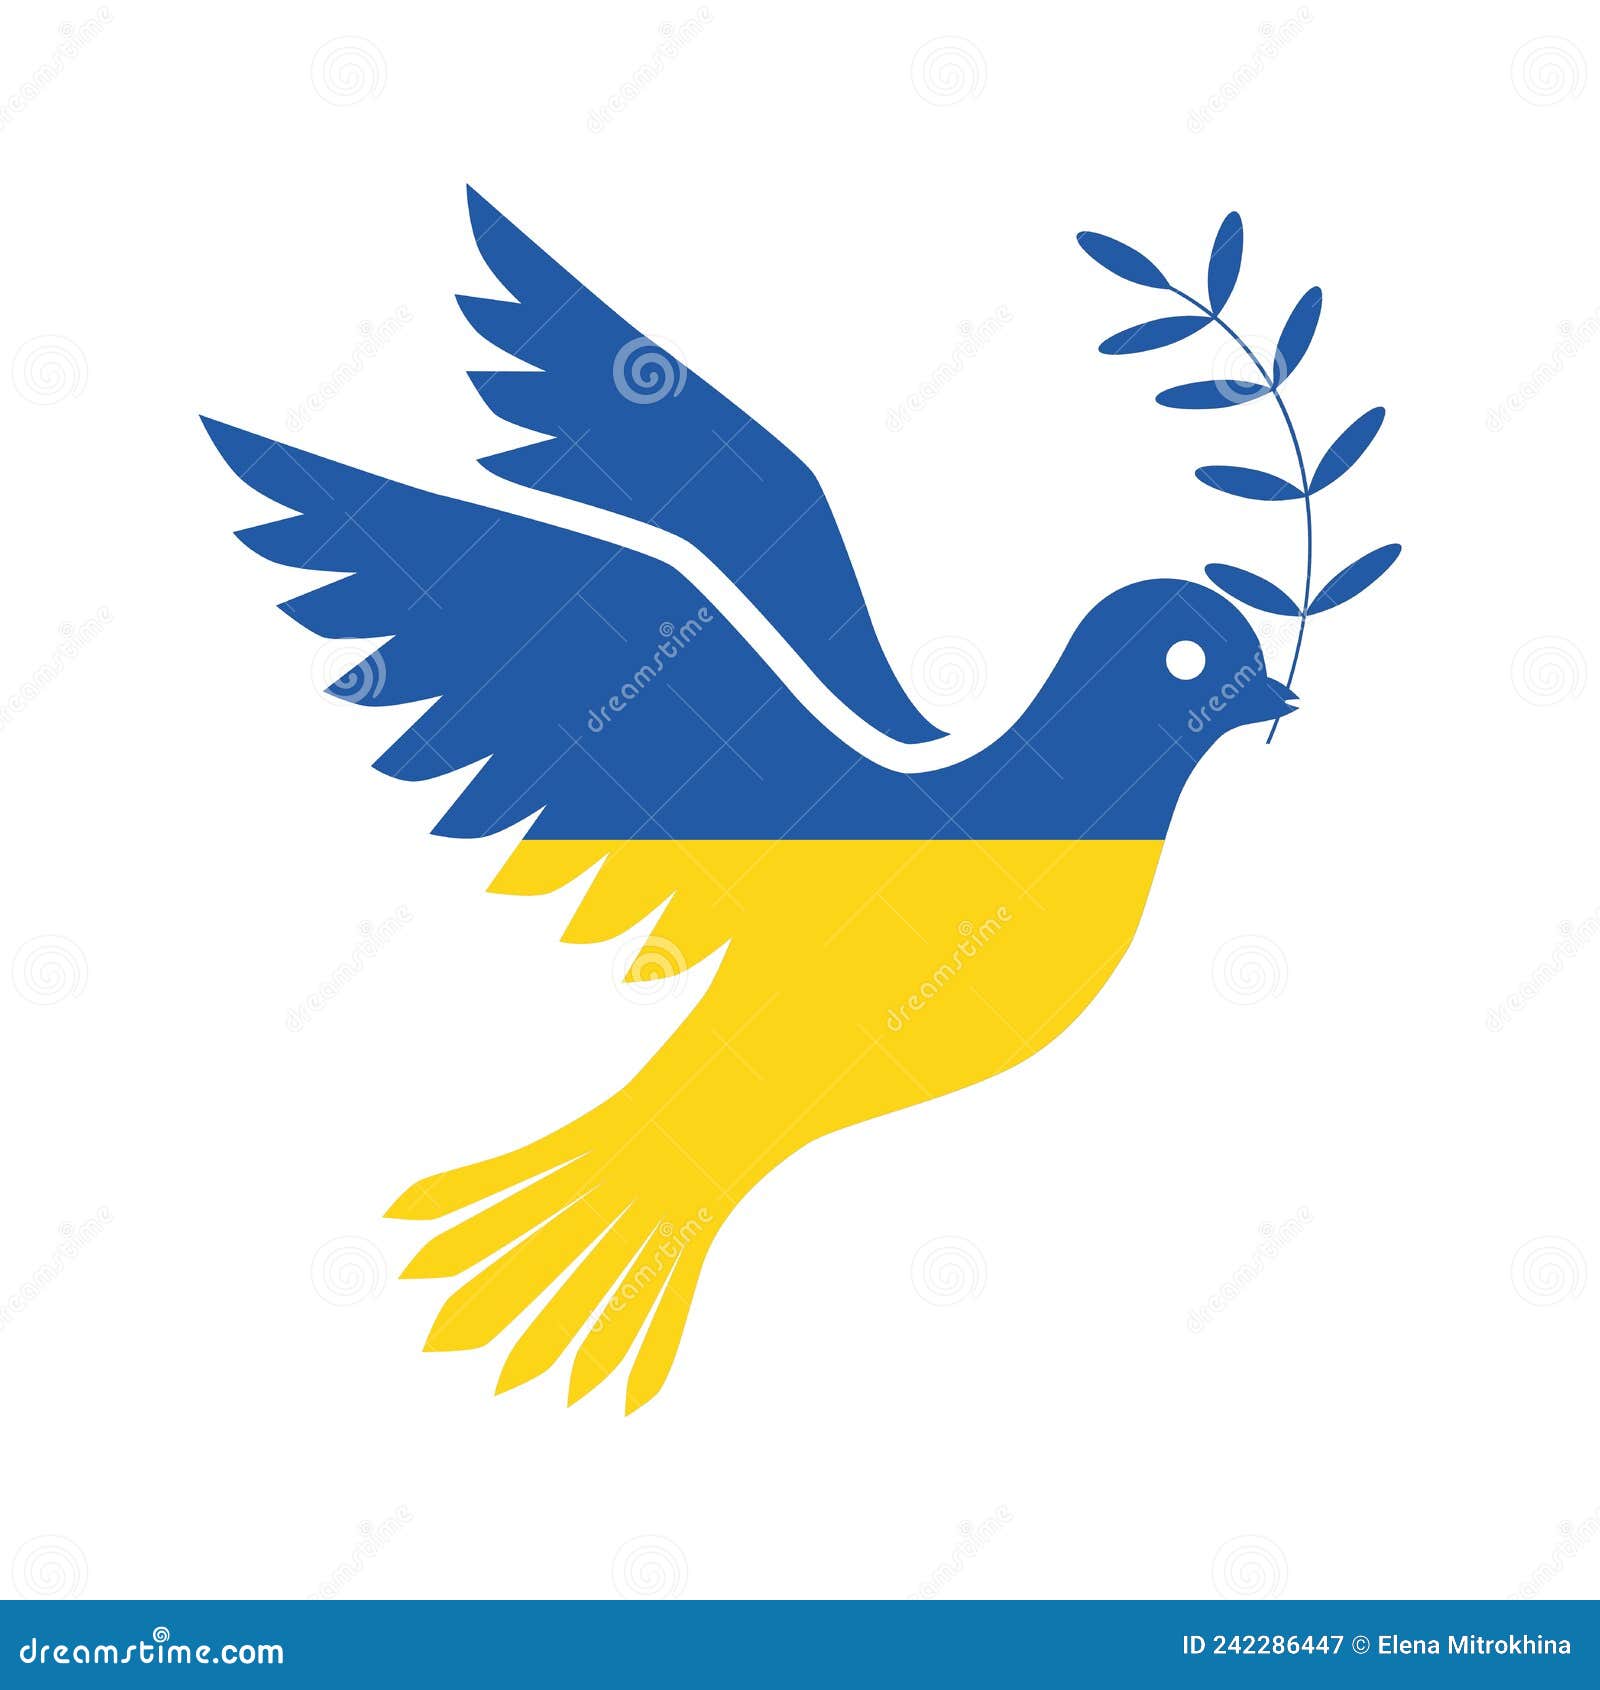 Friedensfahne, Friedenstaube Weltfriedenszeichen Symbol Flagge für